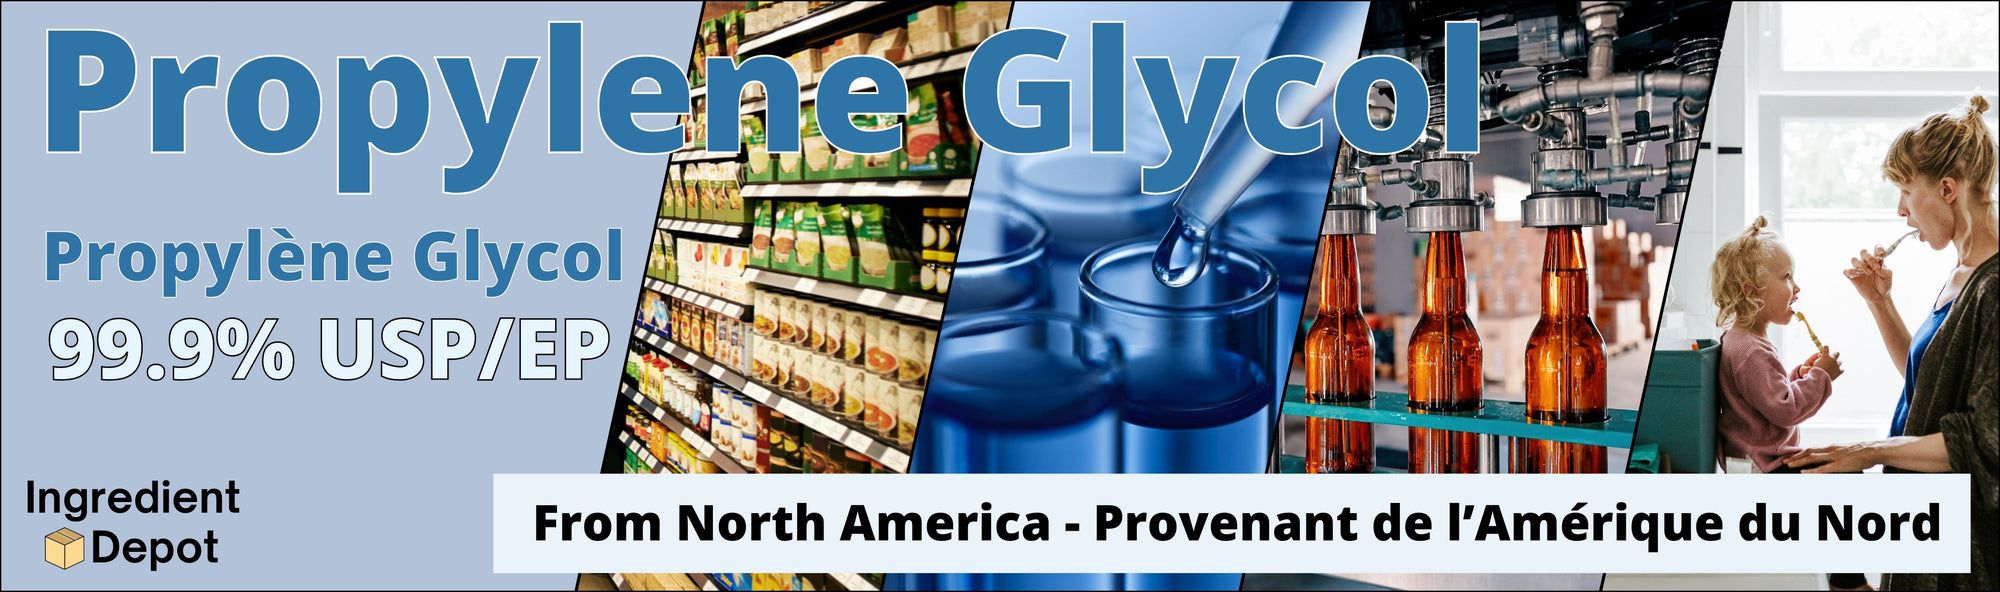 Ingredient Depot Propylene Glycol 99.9% USP/EP